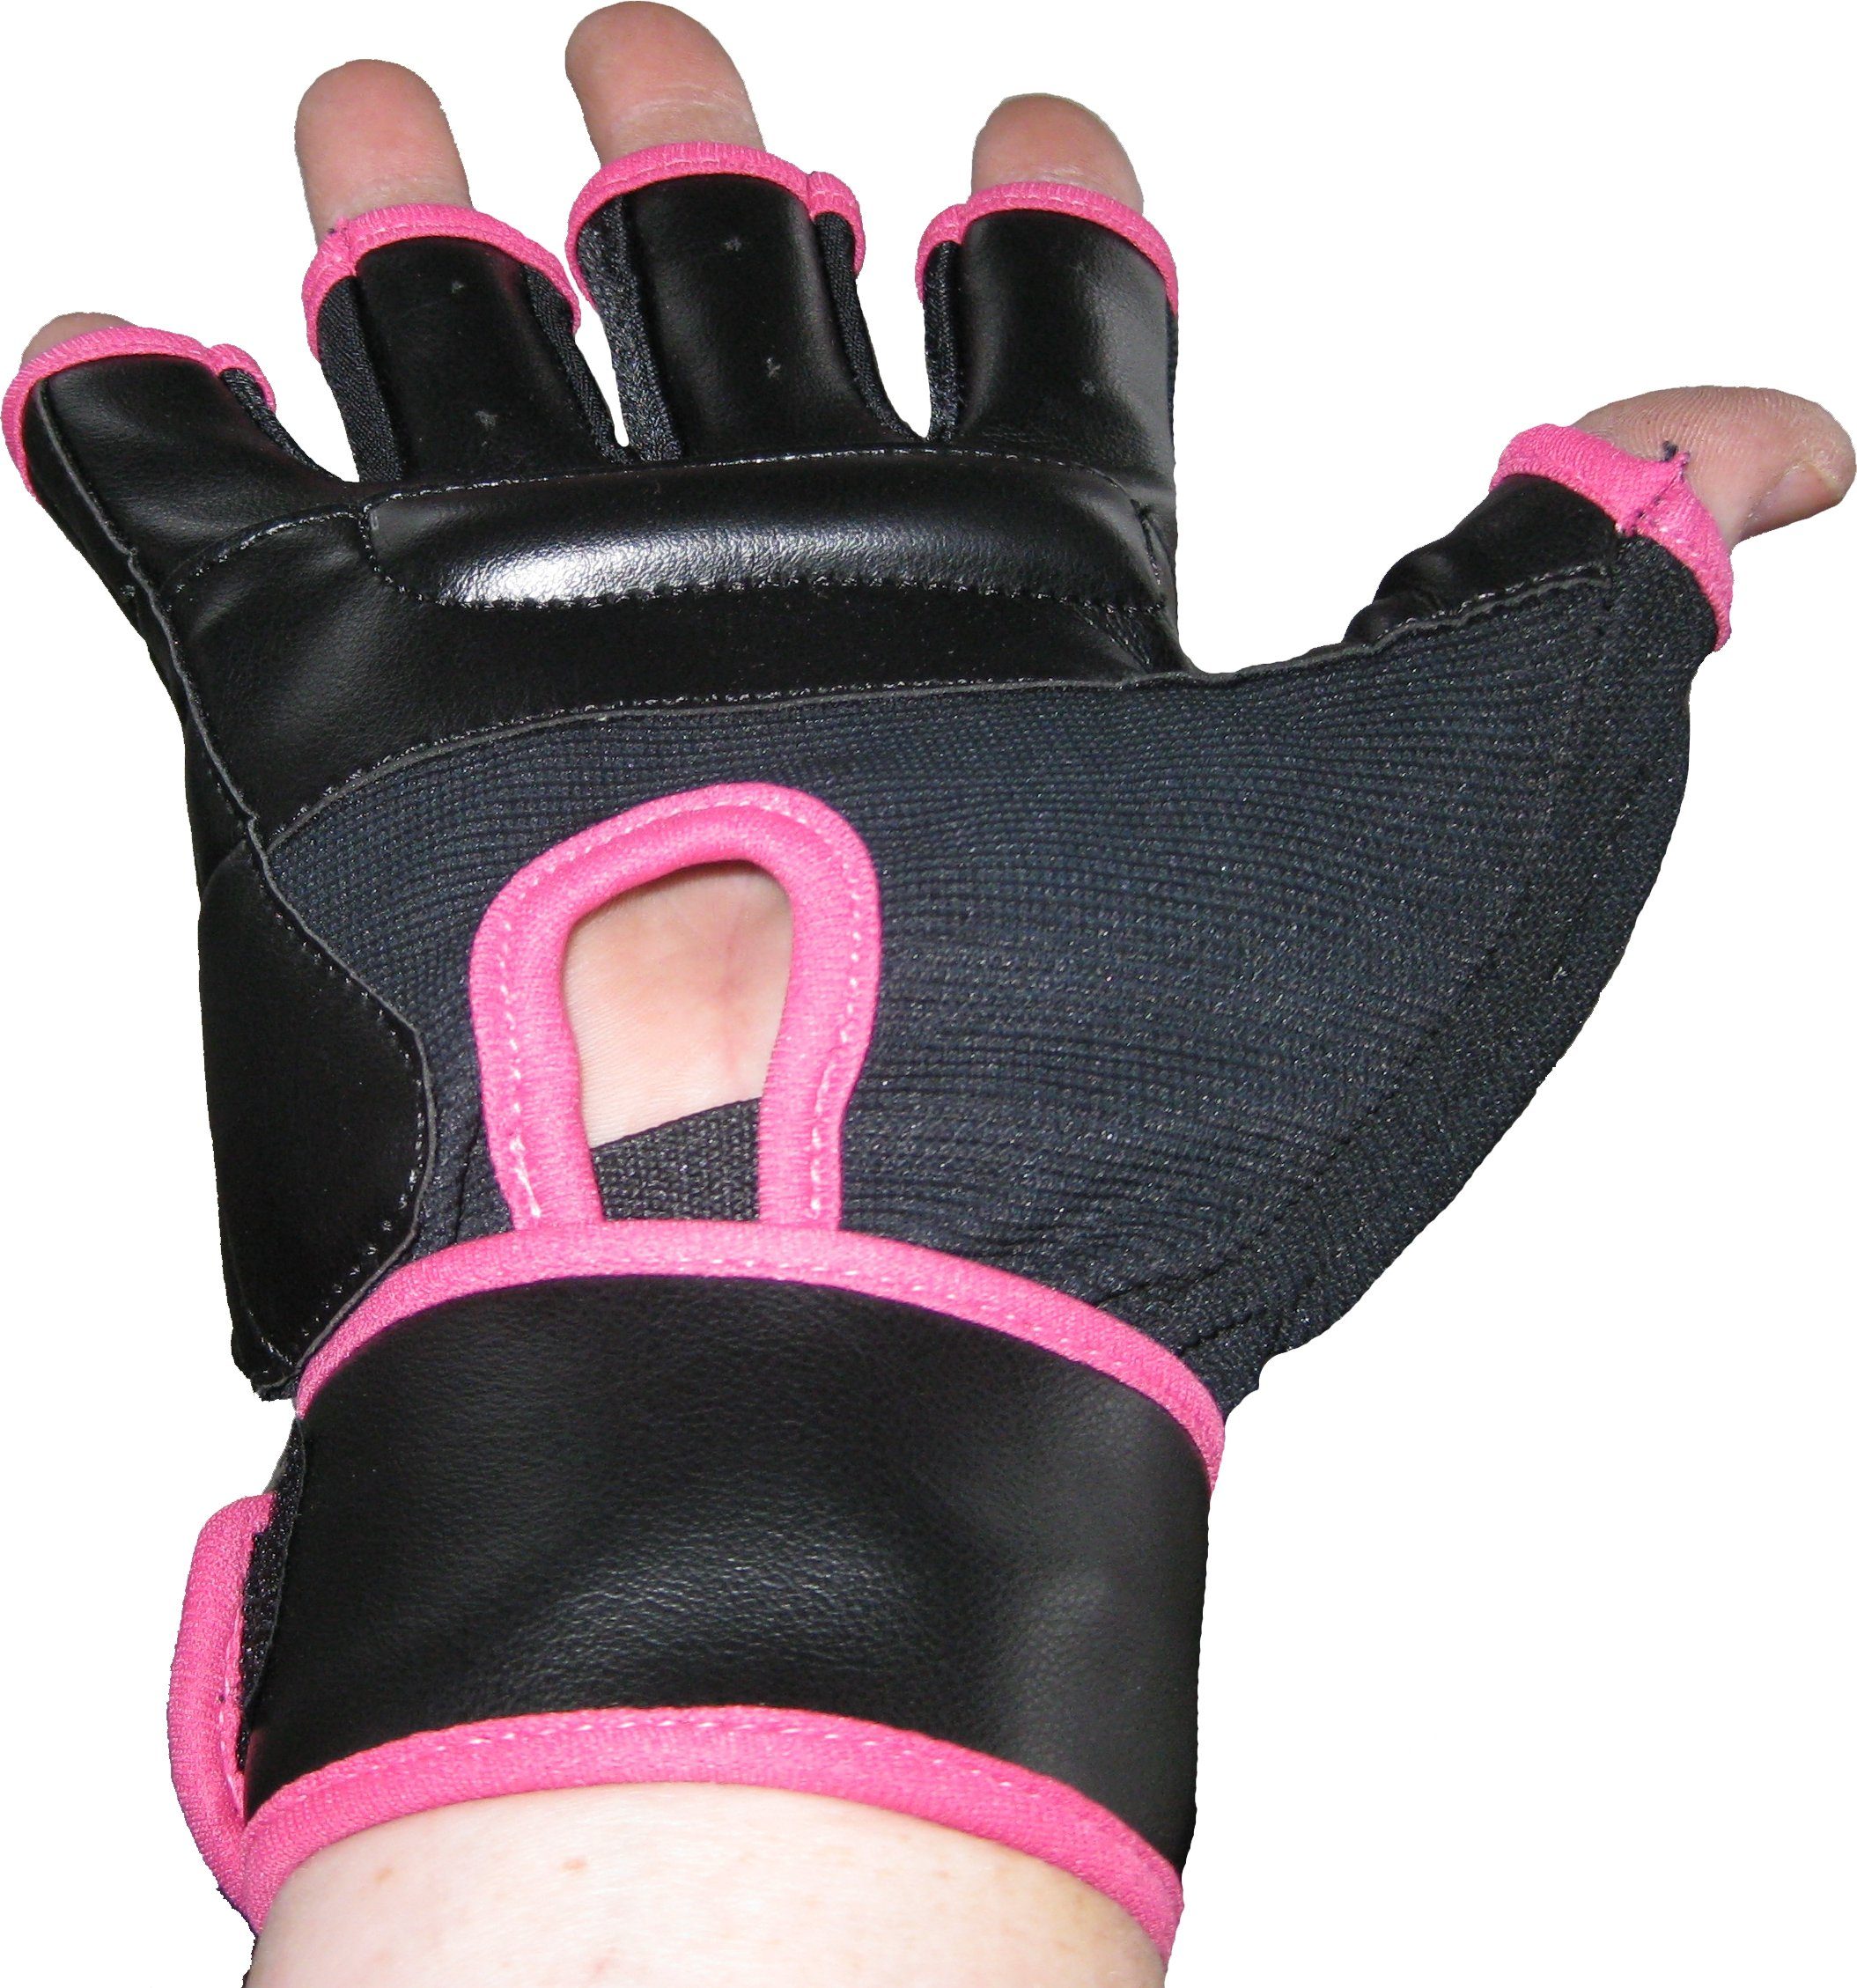 BAY-Sports Sandsackhandschuhe FIT Erwachsene schwarz/pink, Sandsack Handschutz und Boxhandschuhe XXL Kinder - Box XS Boxsack